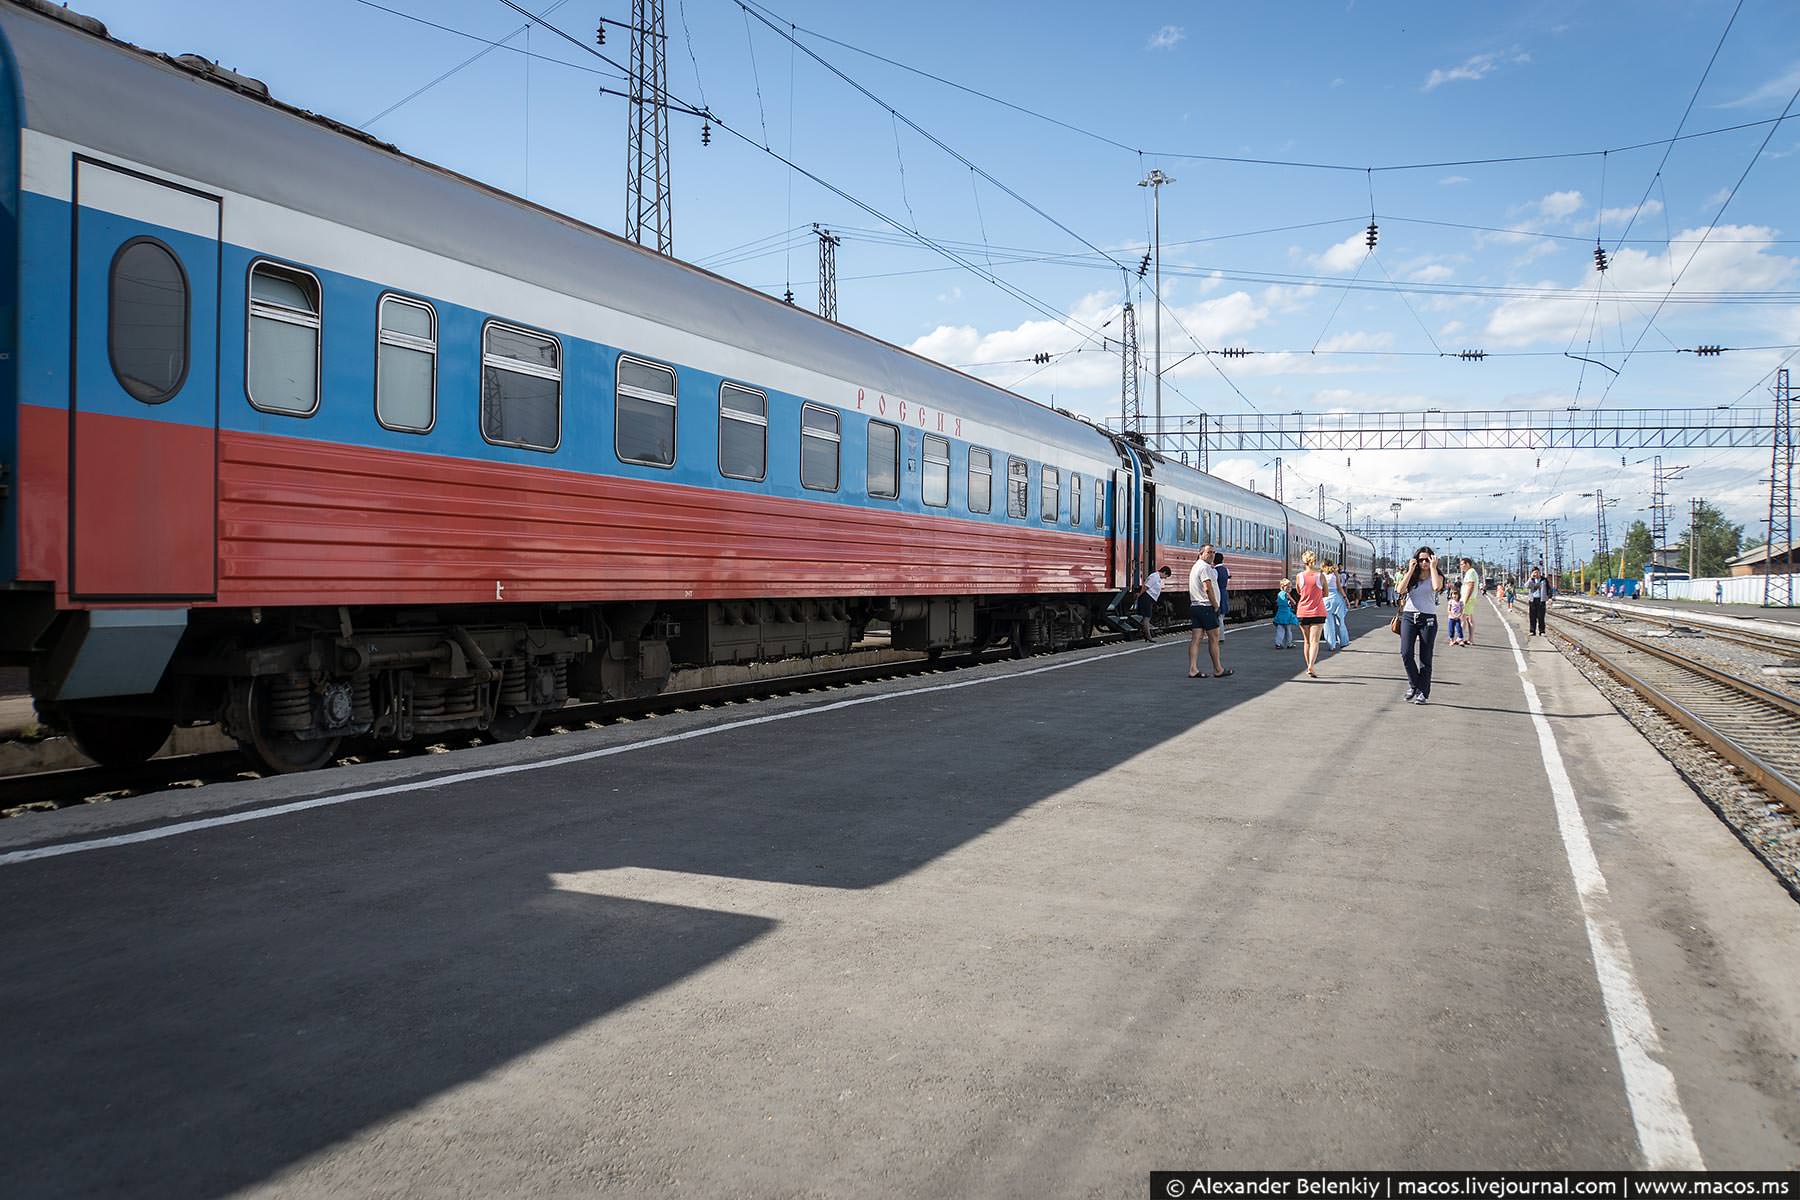 поезд во владивосток из москвы